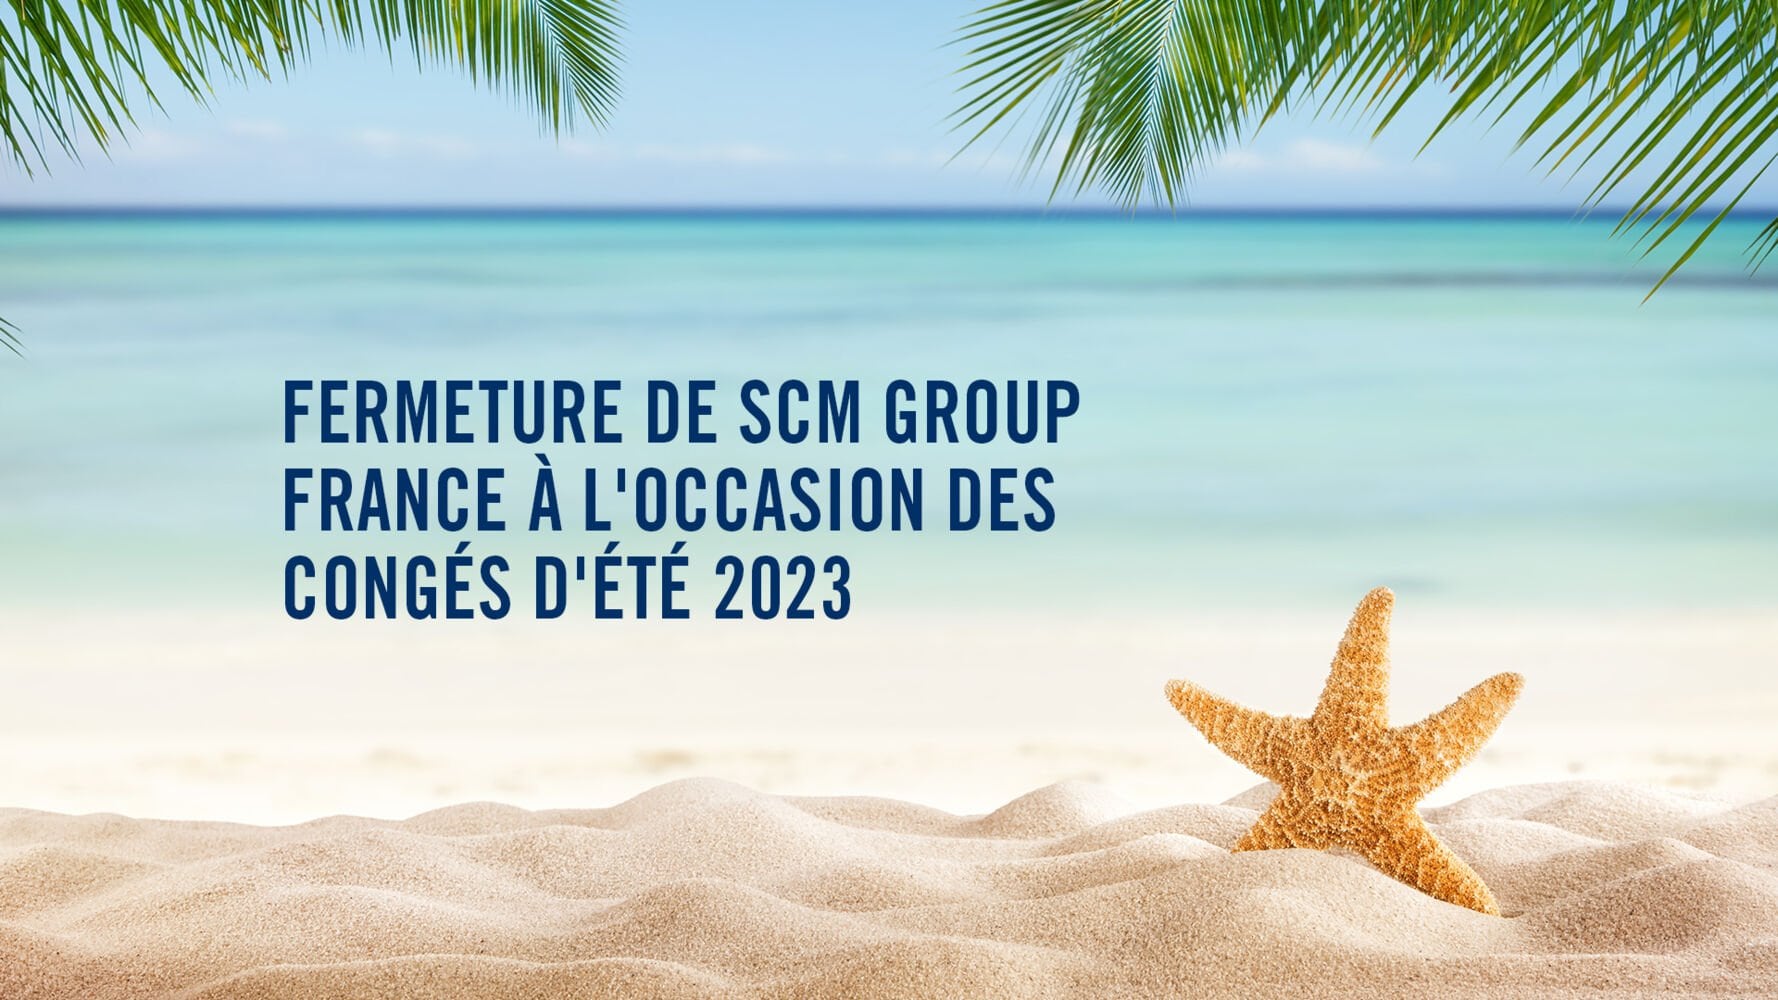 Fermeture Scm Group France à l’occasion des congés d’été